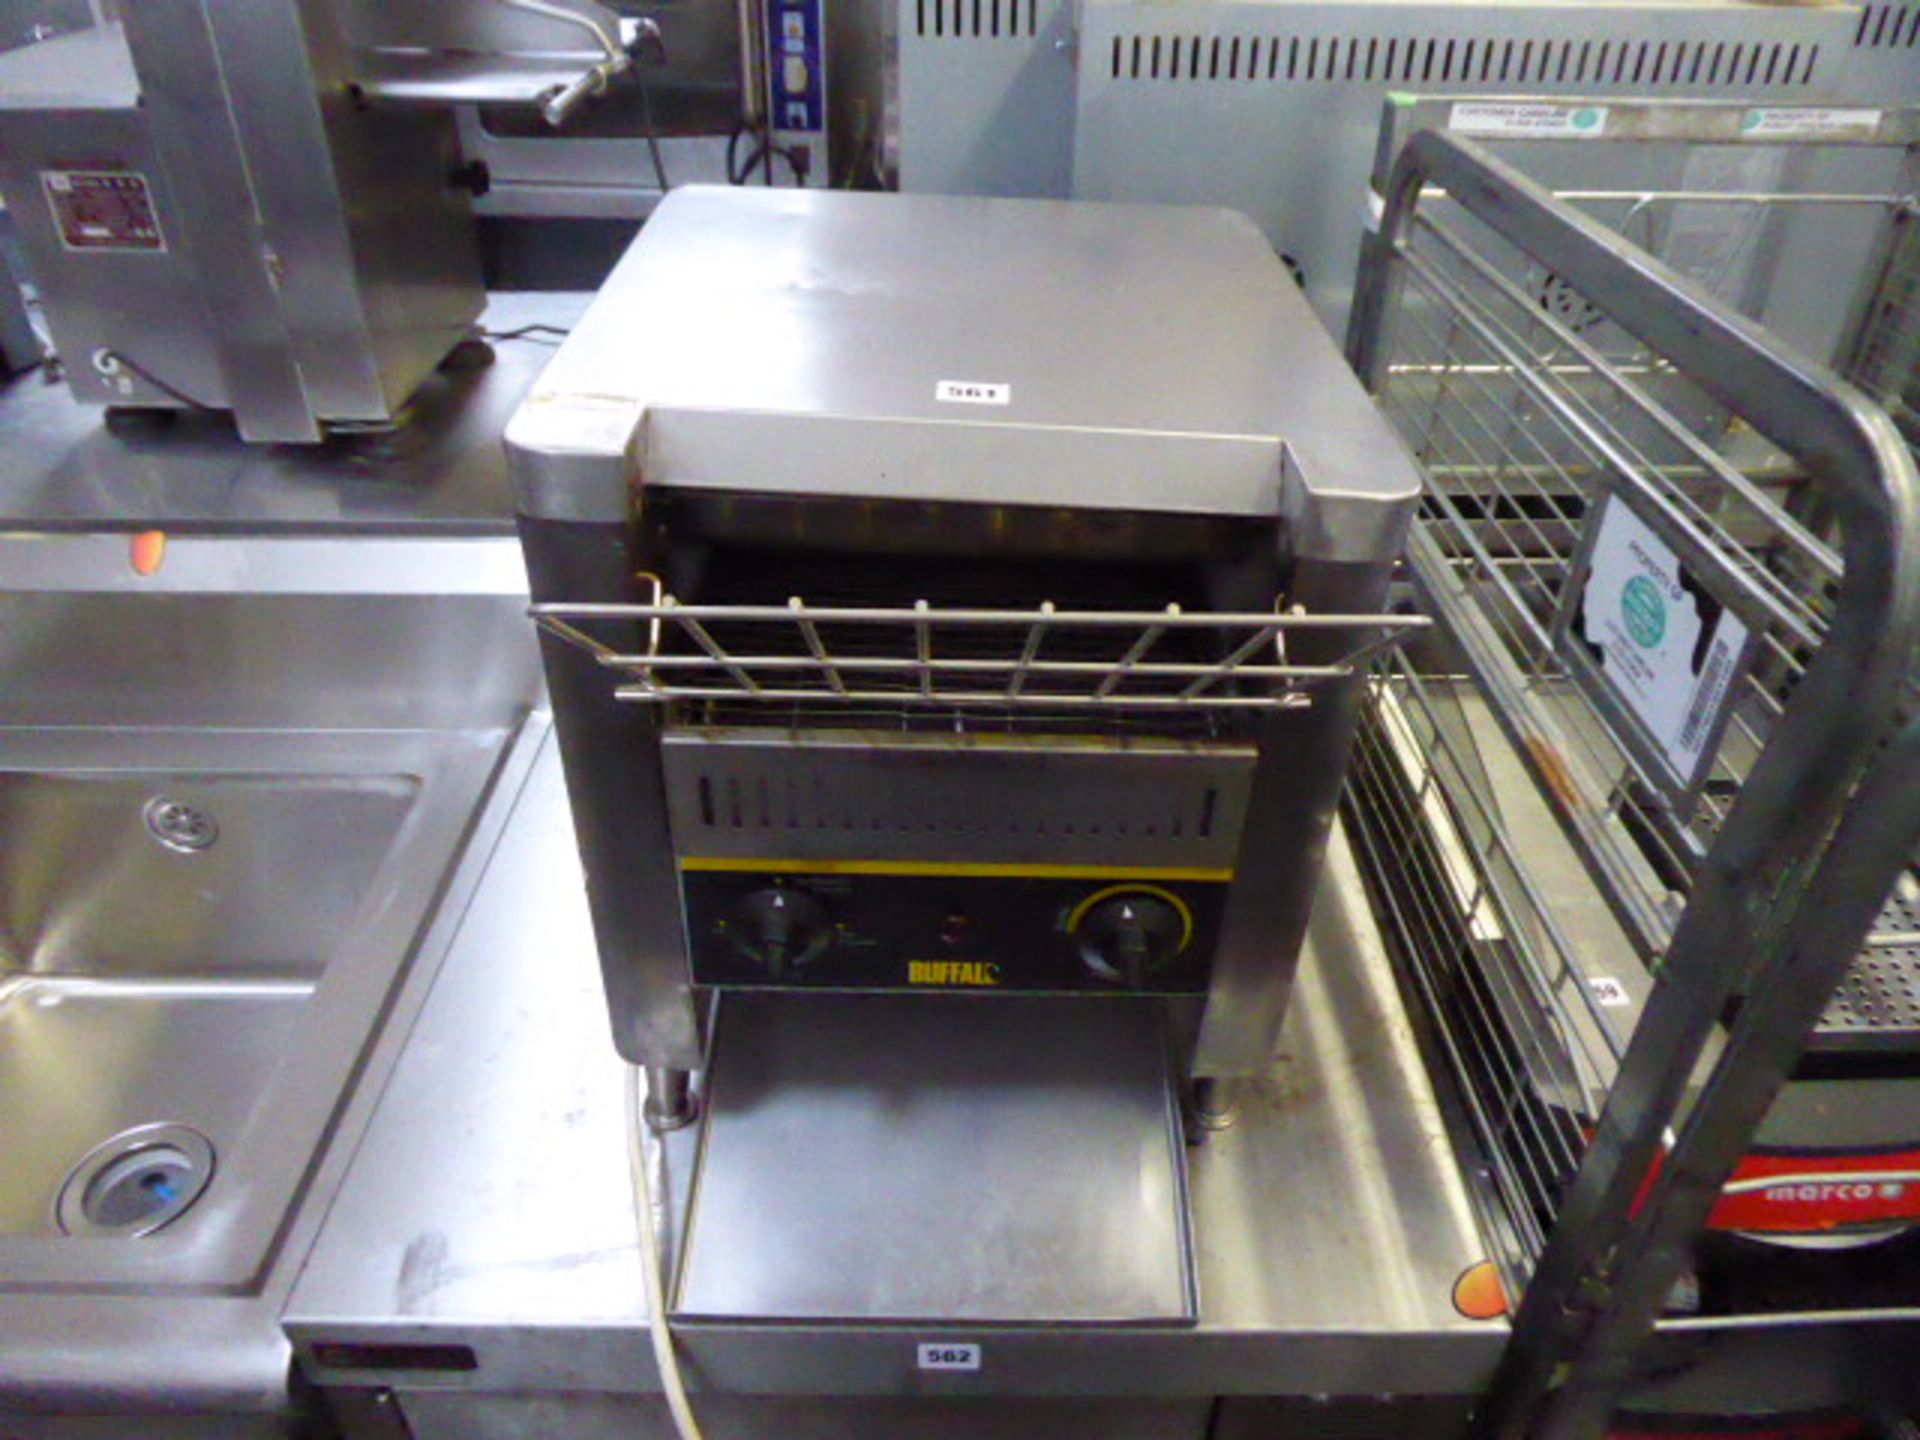 (124) 38cm electric Buffalo conveyor toaster